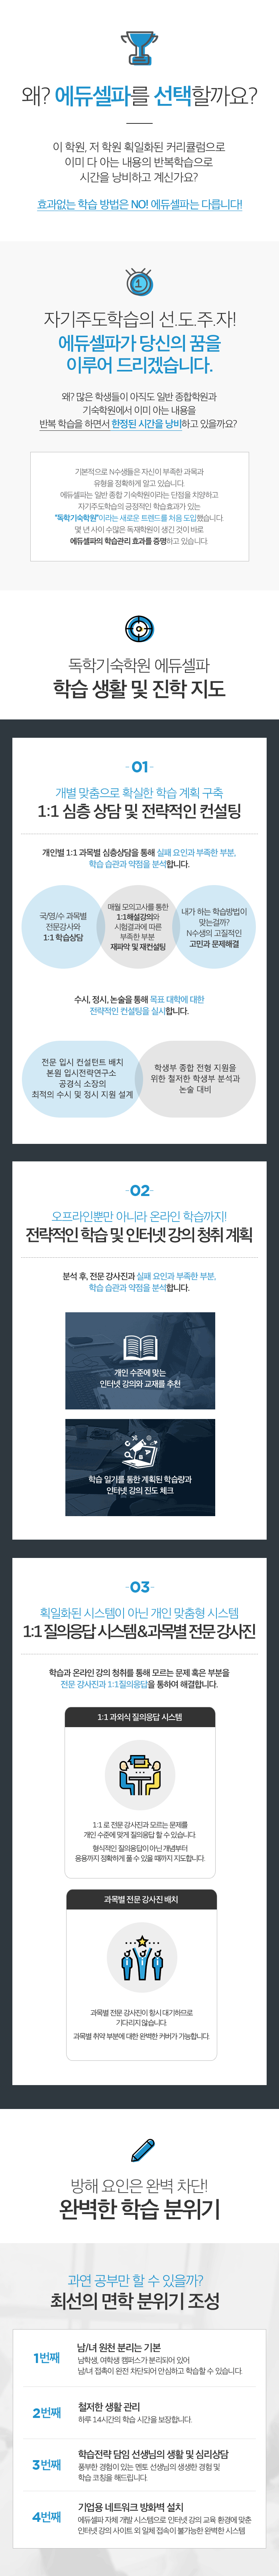 재수선행반 모바일 소개